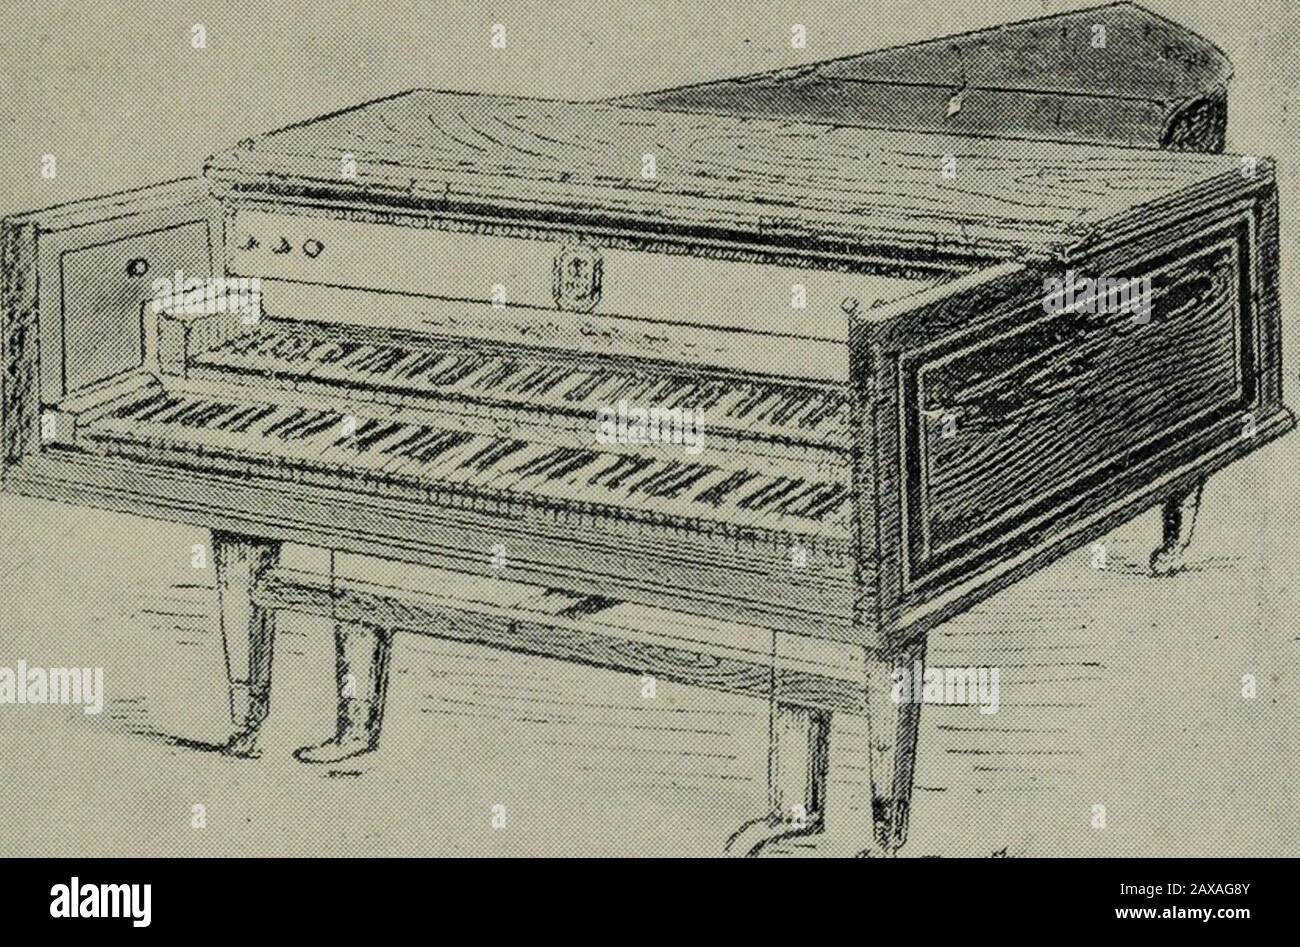 Storia del pianoforte americano : il suo sviluppo tecnico e il commercio .  E PRIMO PIANOFORTE REALIZZATO IN QUESTO CONTINENTE - JOHN BEHRENT - JULIAN  ALBRECHT - TAWS - ULTERIORI INFORMAZIONI SU